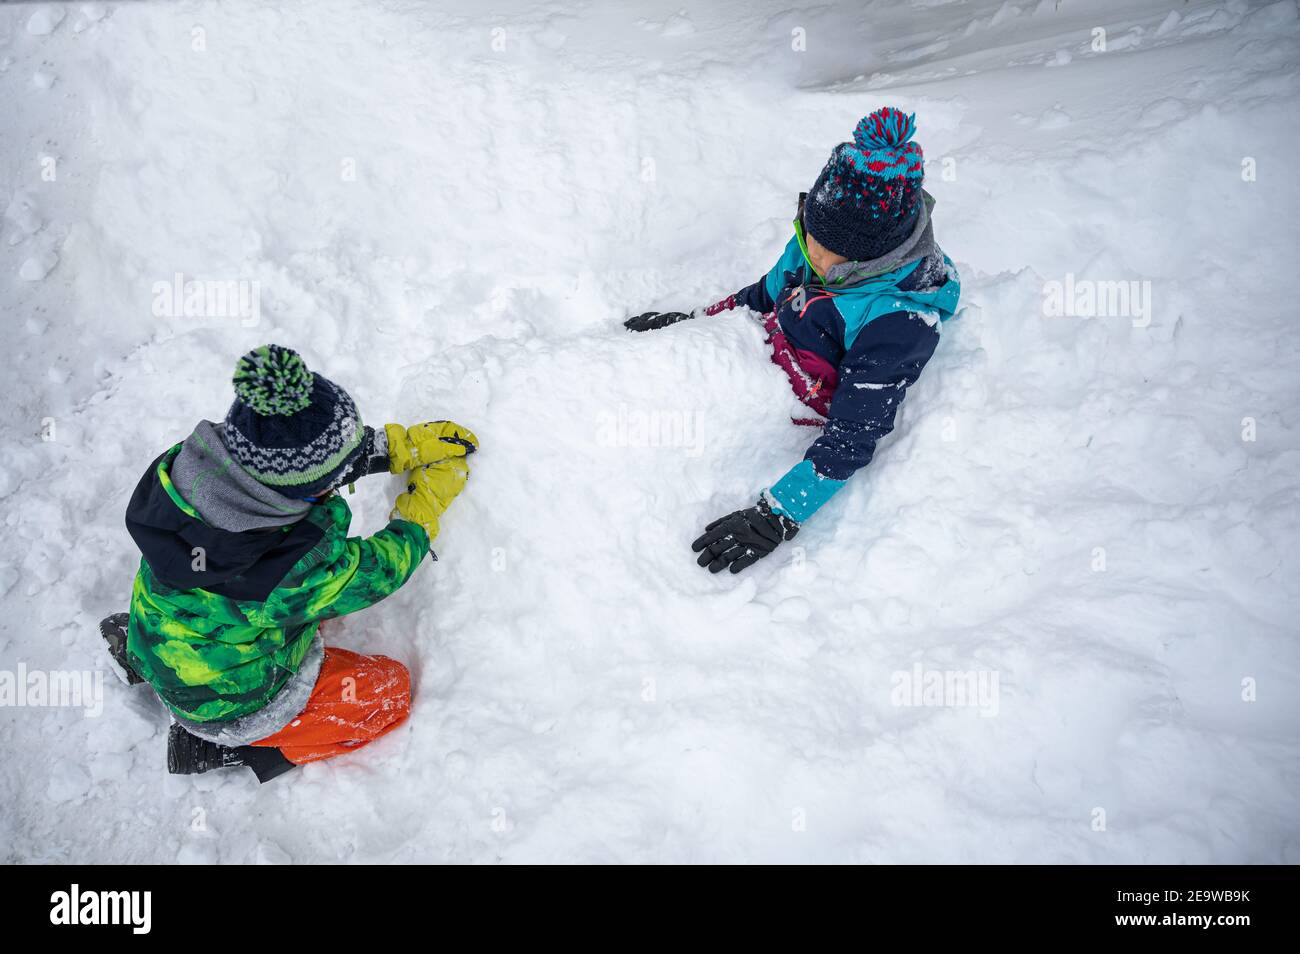 Bambini che giocano nella neve. Due bambini asiatici sepolti nella neve in inverno. Felice infanzia e divertimento. Zermatt, Svizzera. Foto Stock